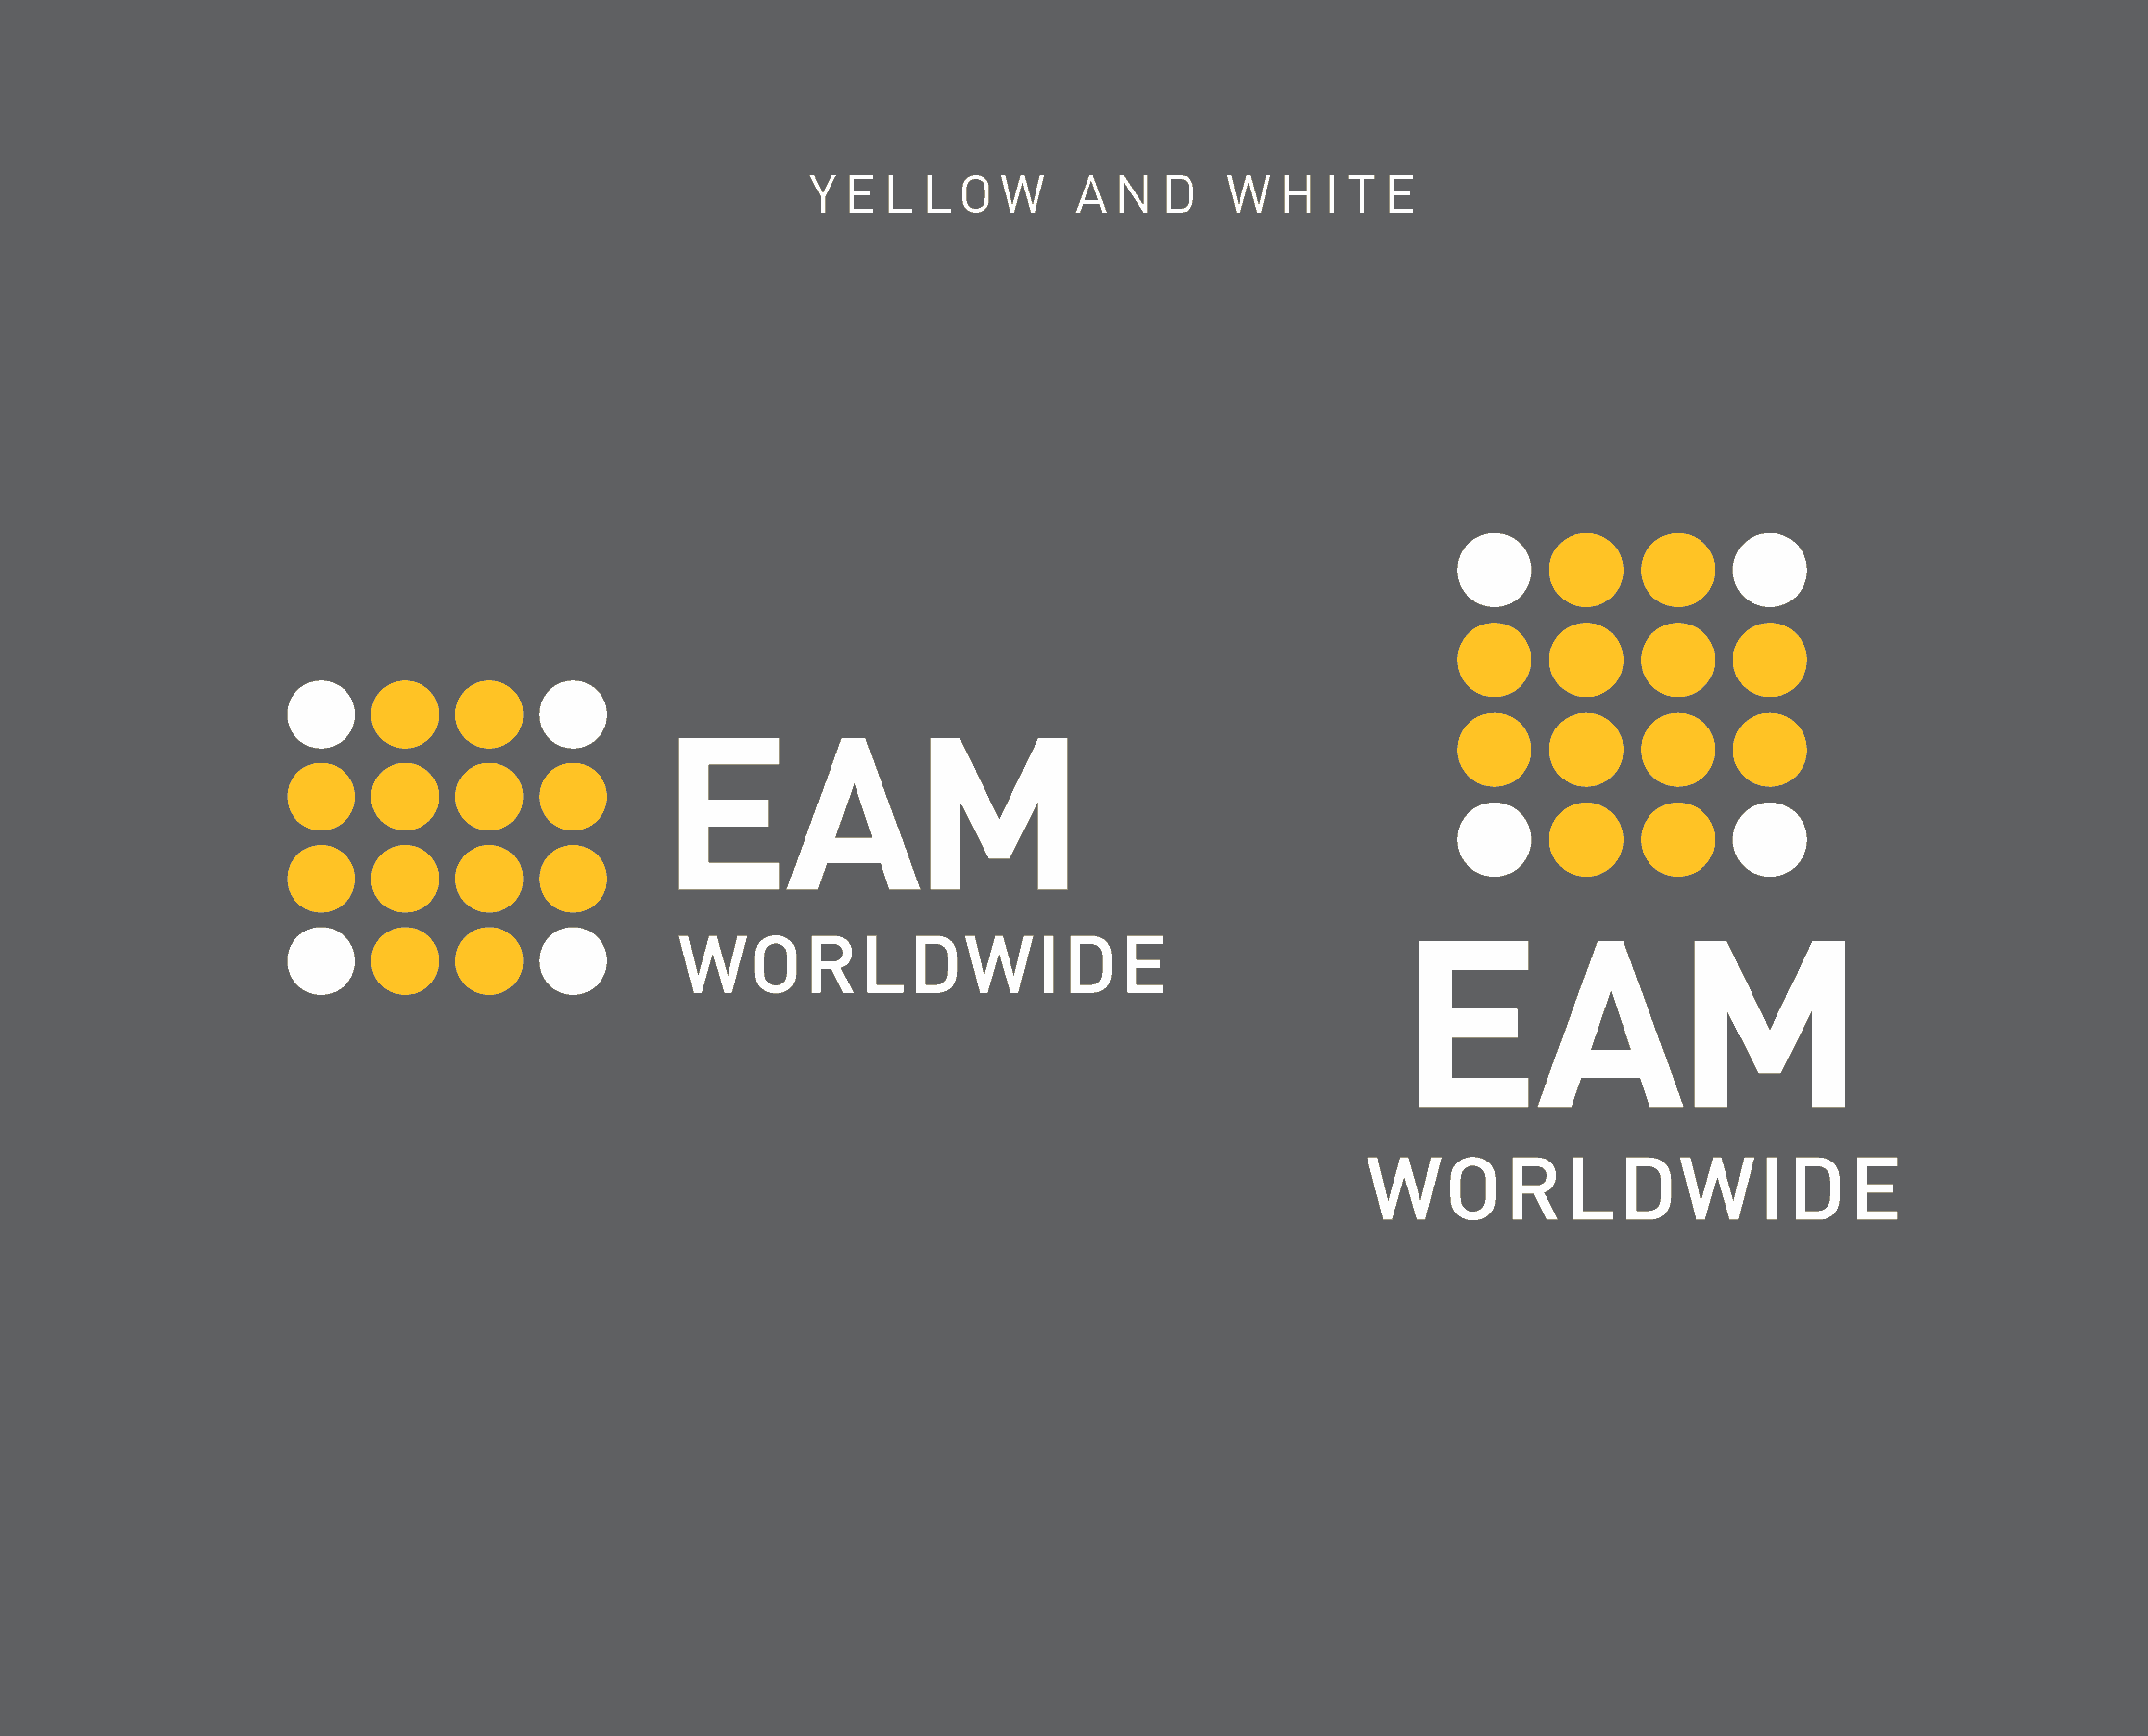 EAM Worldwide logo usage on dark grey background